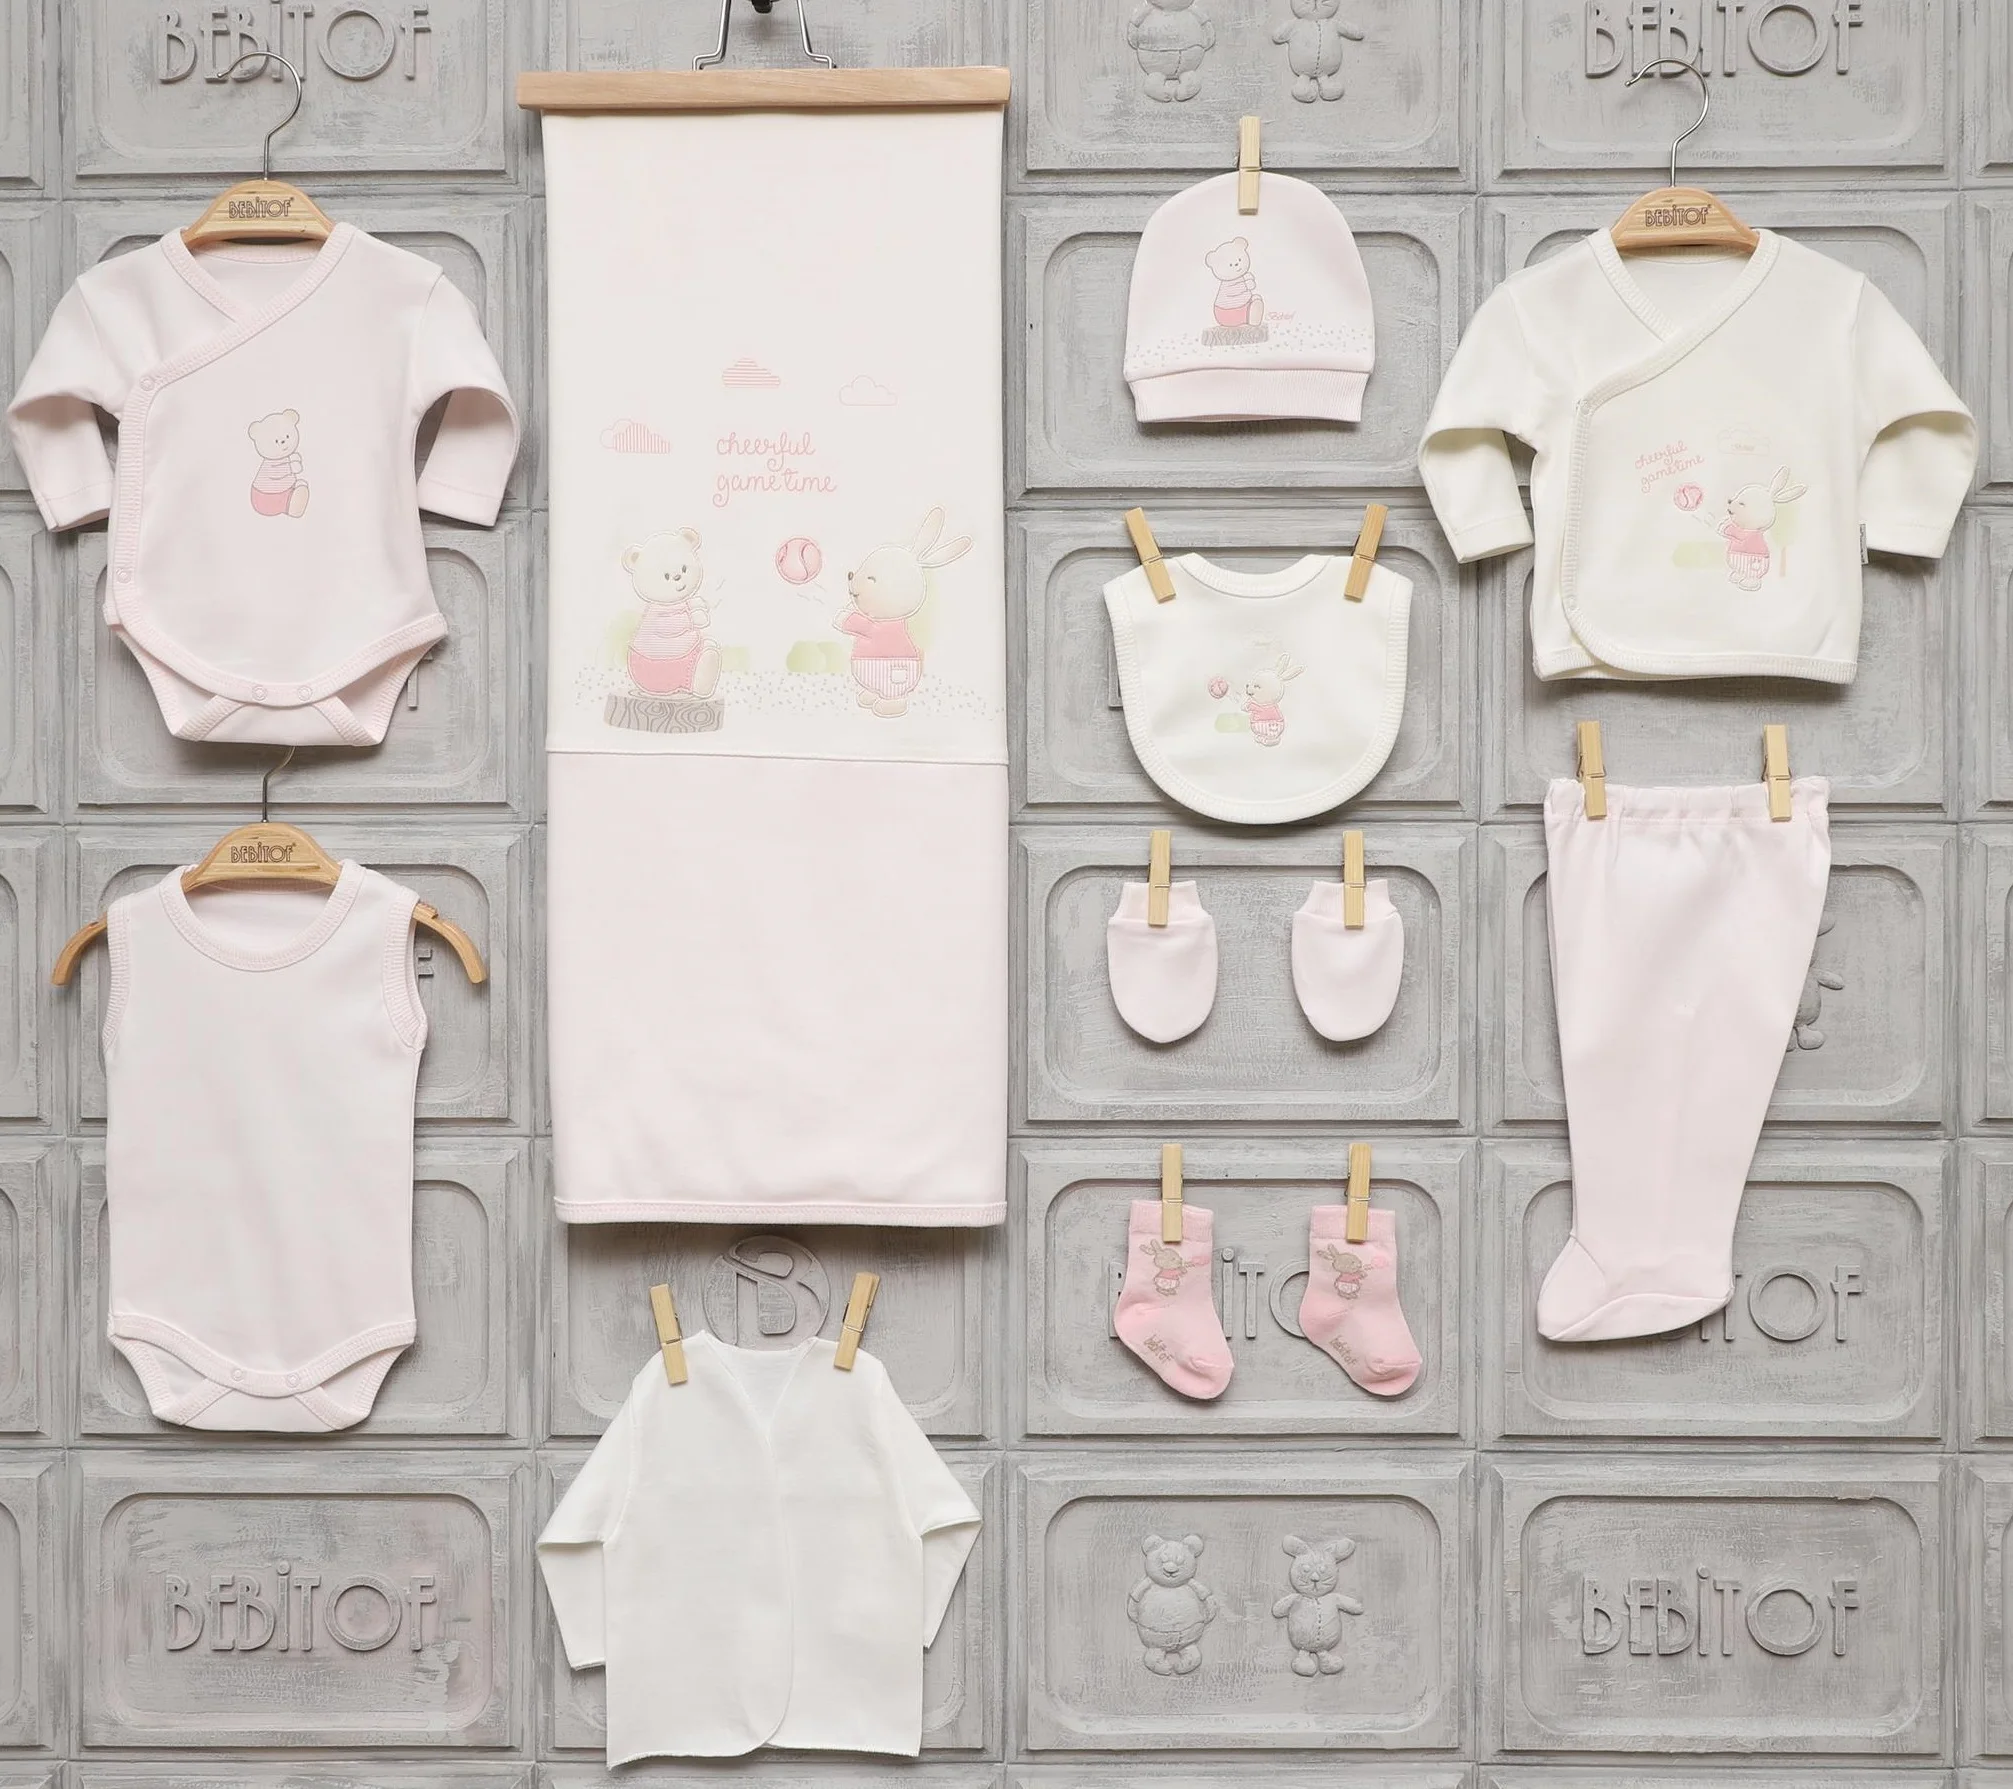 Bebitof Одежда для новорожденных девочек хлопковая базовая одежда первой необходимости 10 штук Layette Wellcome подарочный набор для дома 0 3 месяцев от AliExpress RU&CIS NEW